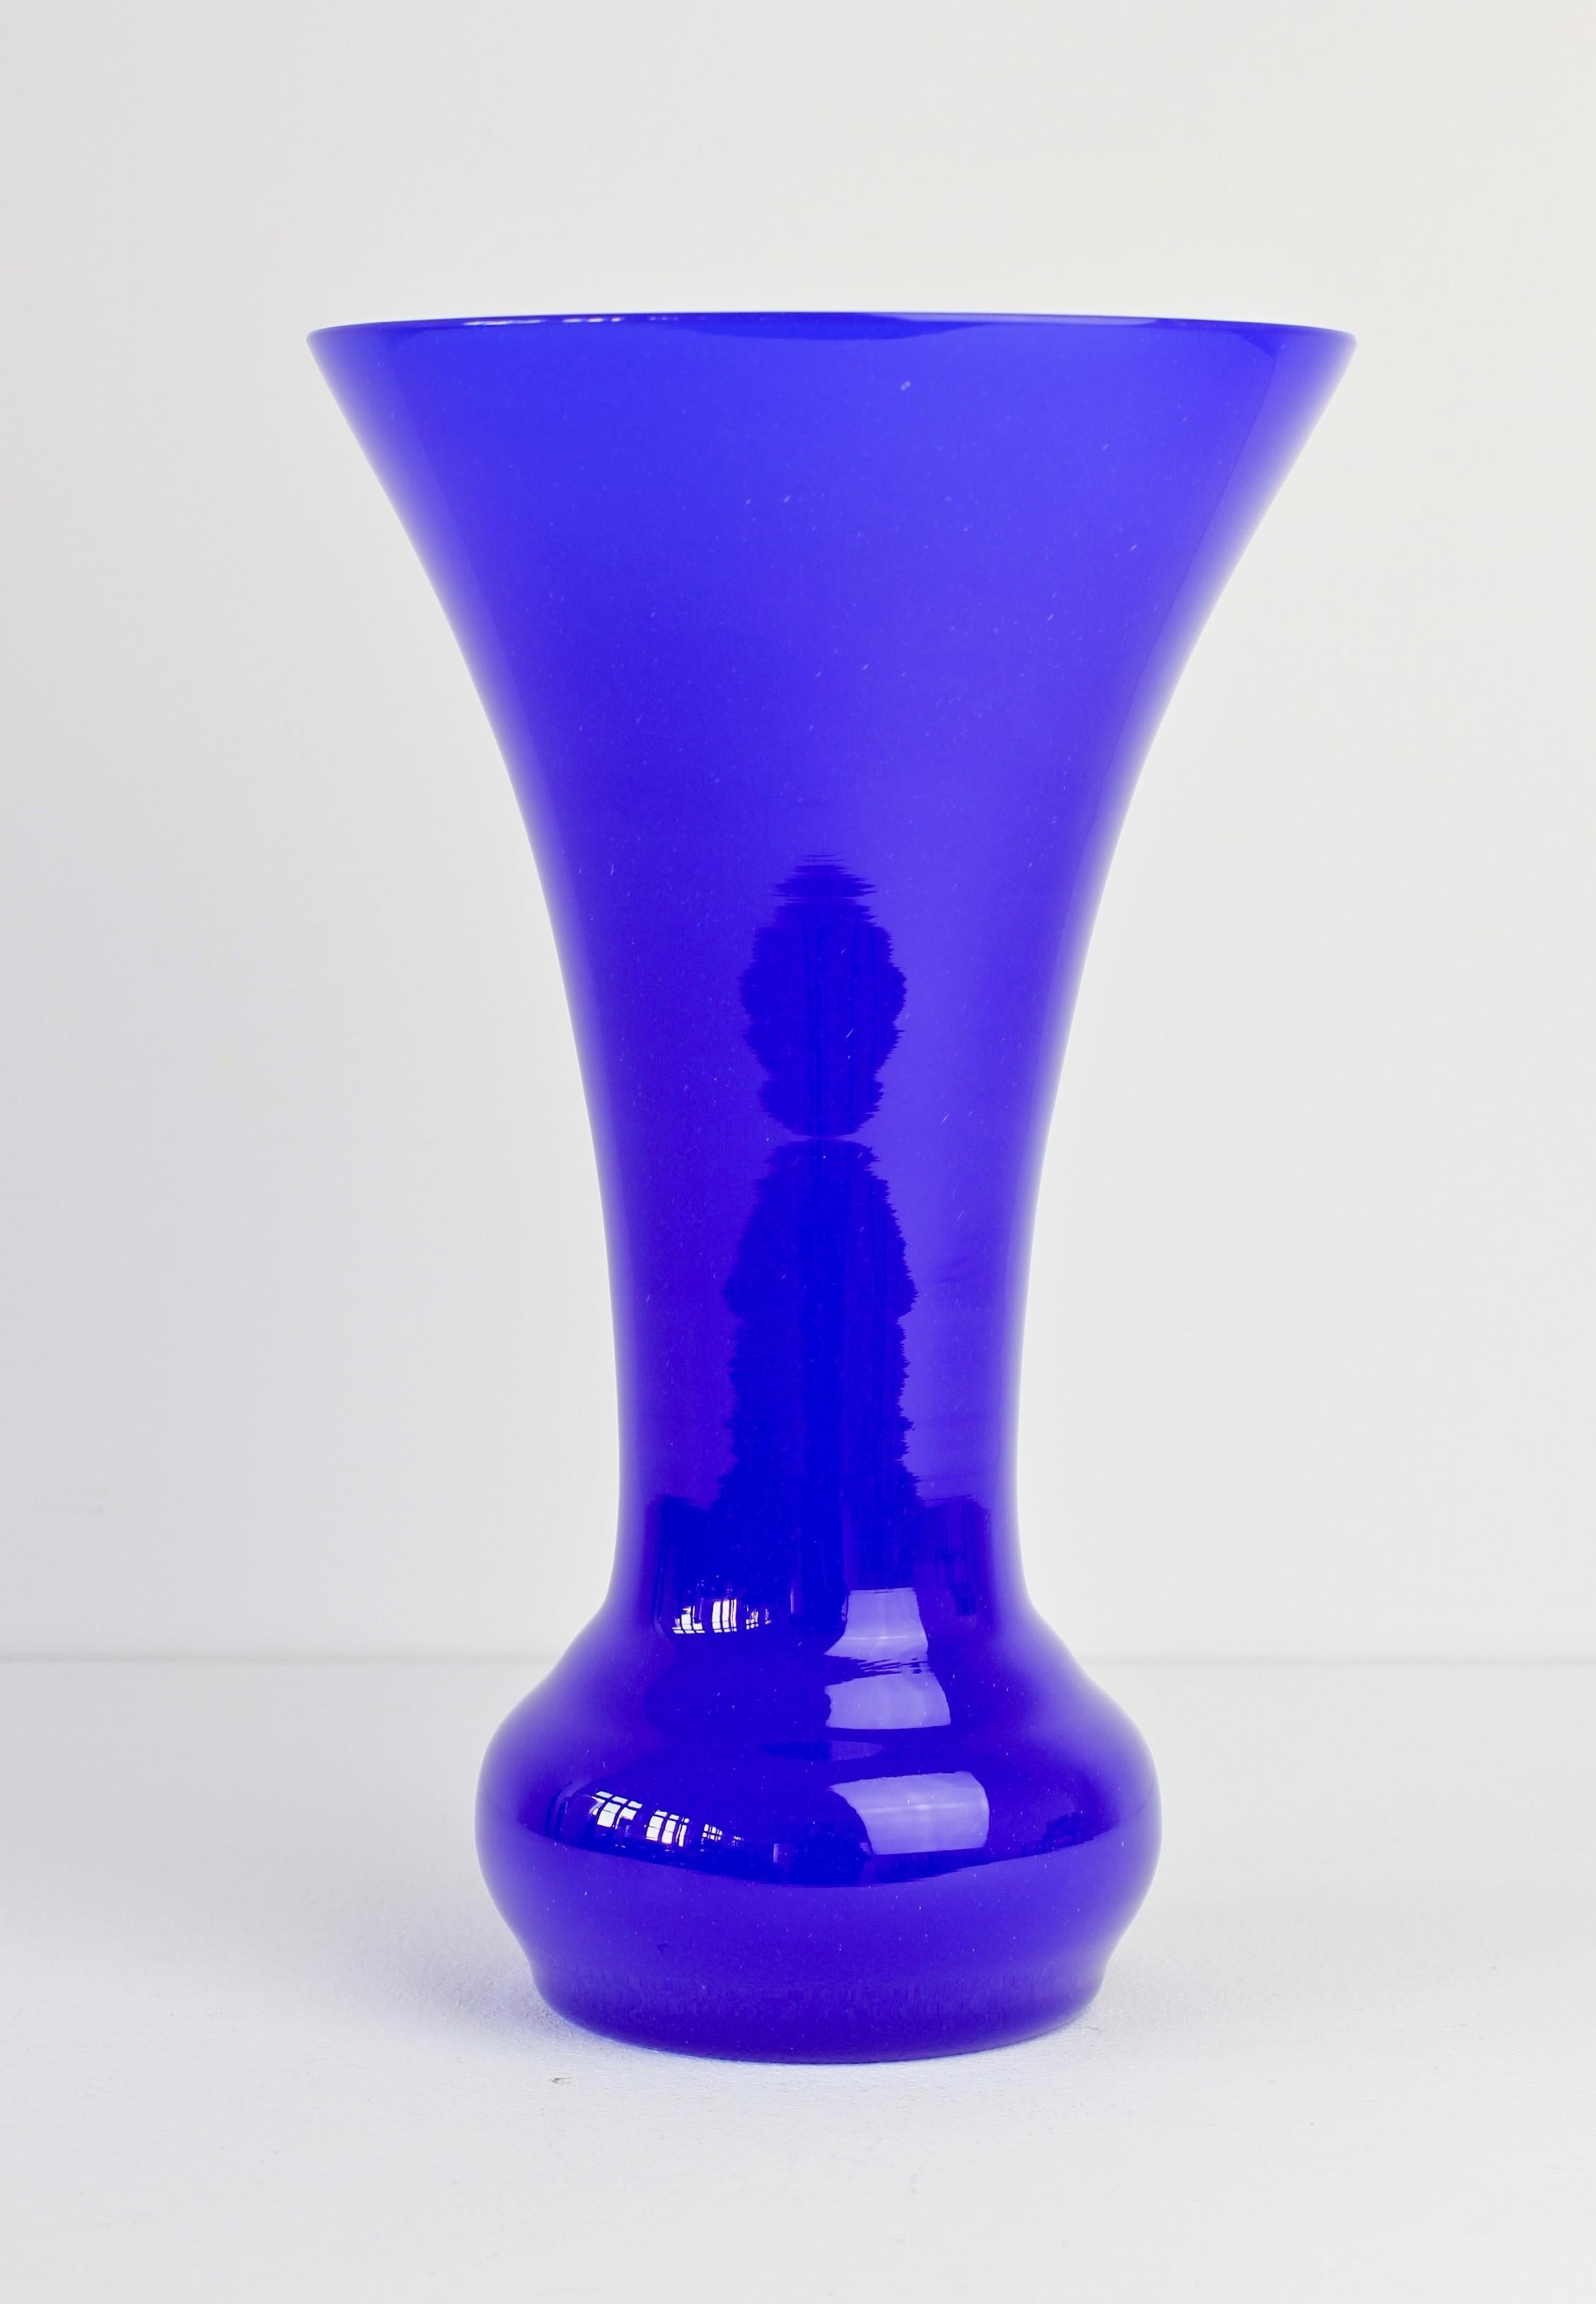 Wunderschöne hohe, tief kobaltblaue Vase von Cenedese Vetri aus Murano, Italien. Eine witzige, flippige und helle Art, einen Hauch von kräftiger Farbe in Ihr Interieur zu bringen - stellen Sie sich ein solches Glas auf einem offenen, weißen Regal in